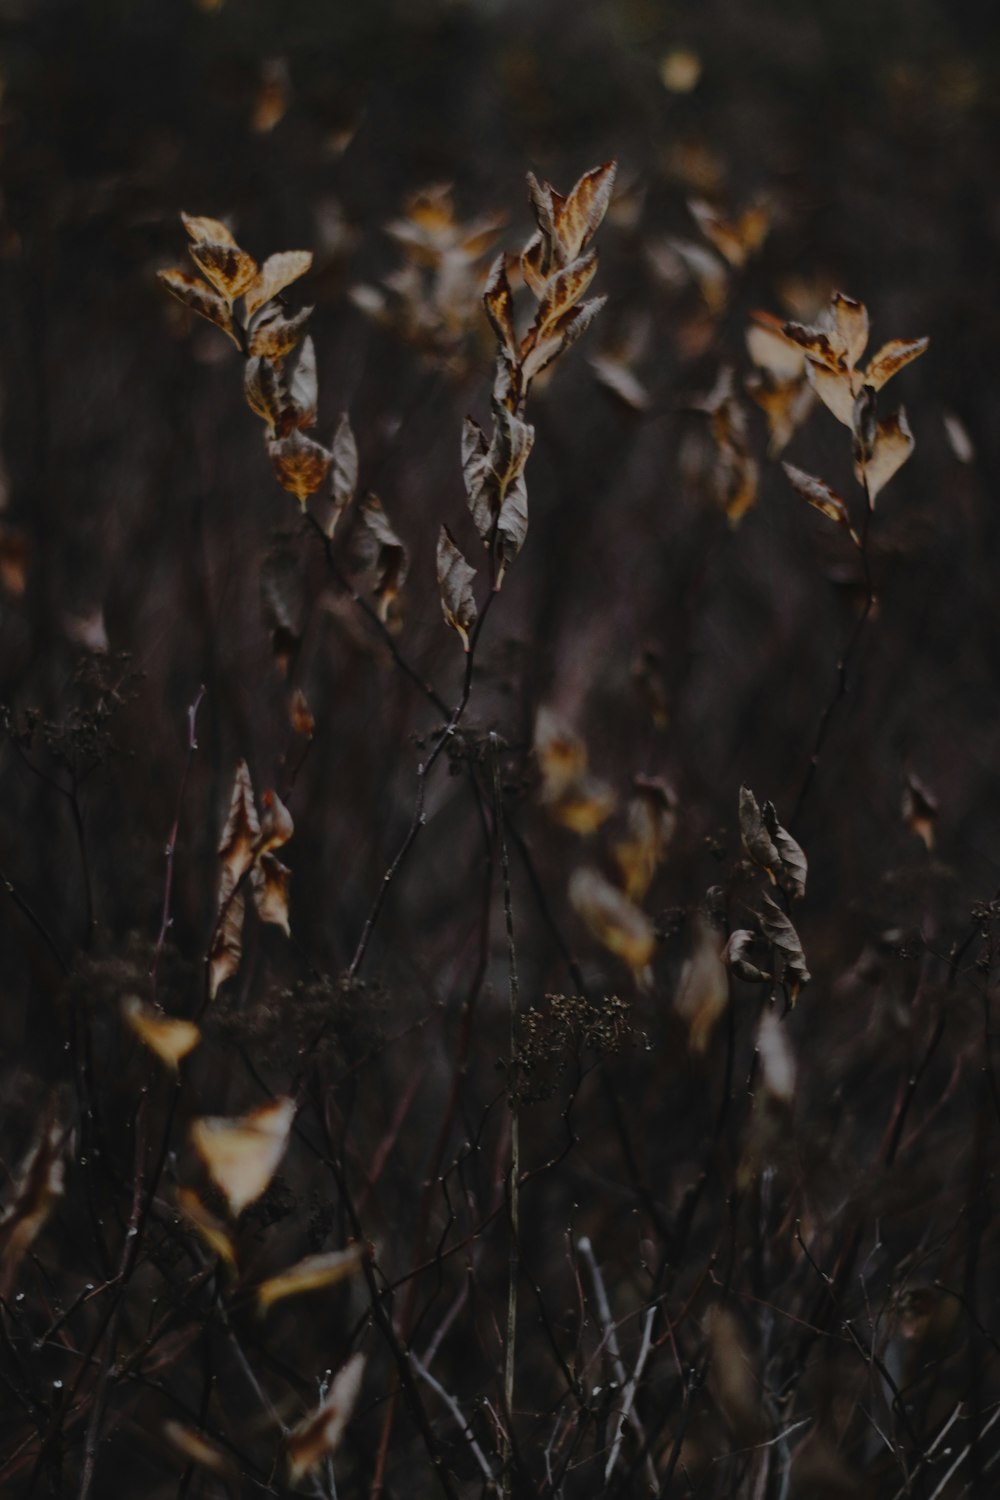 틸트 시프트 렌즈의 갈색 잎